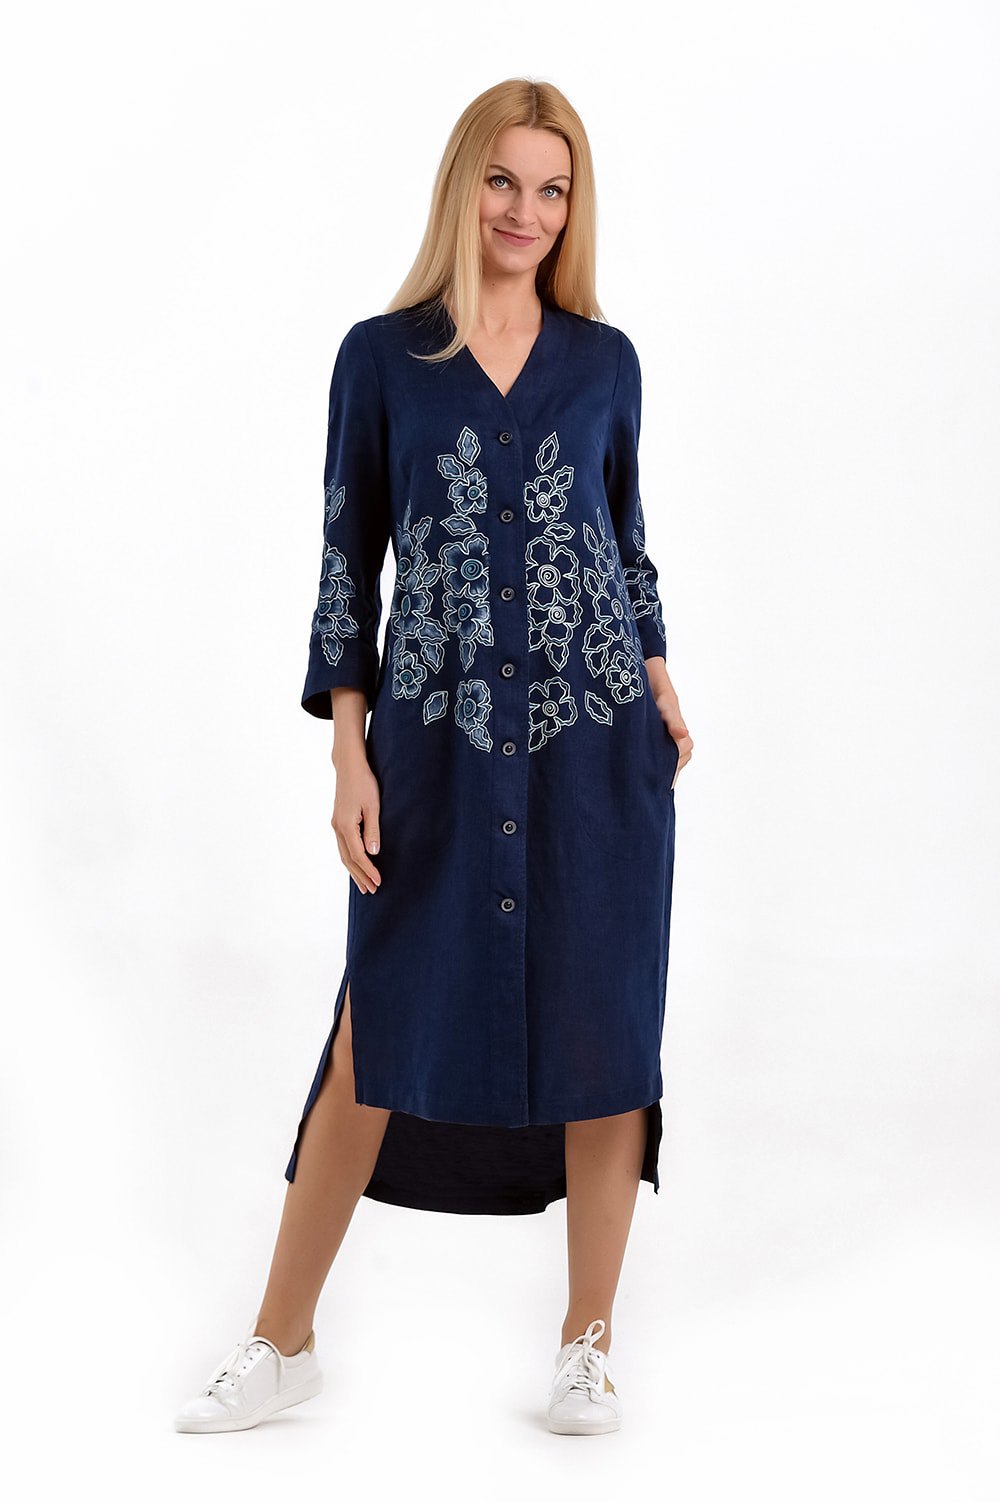 Платье женское "Халат на пуговицах" модель 443/2 темно-синий